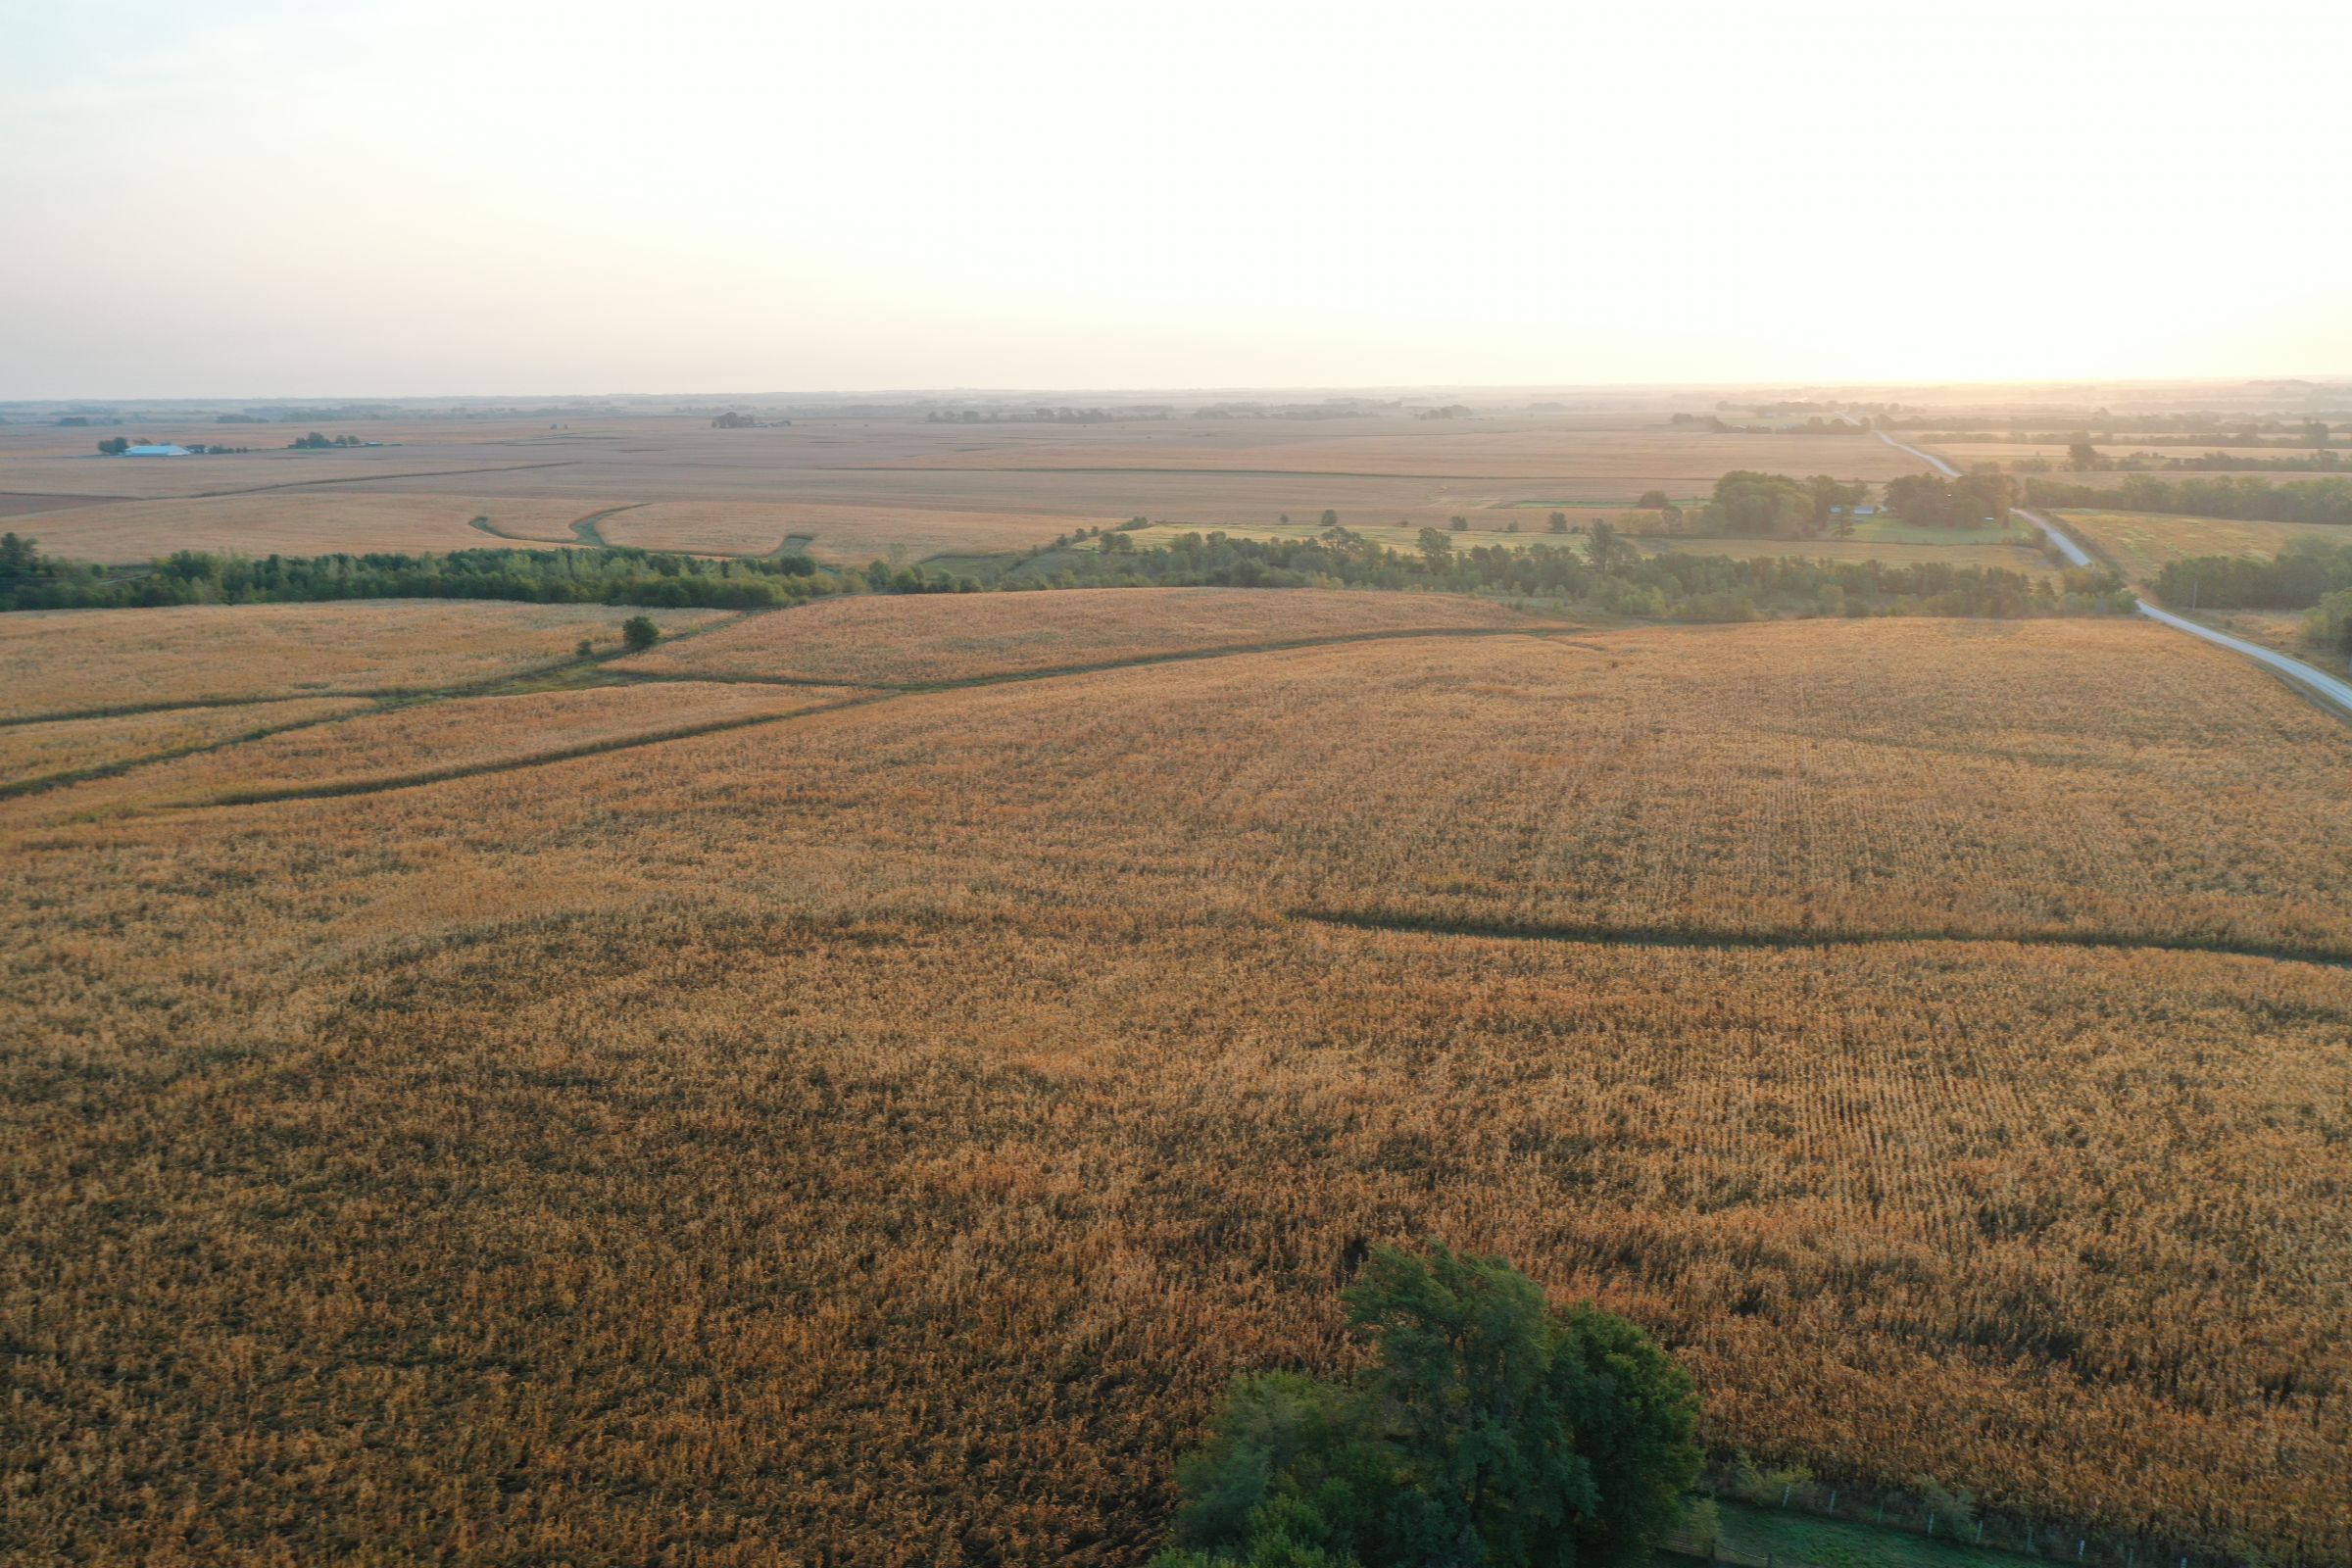 Dallas County Iowa Farmland for Sale